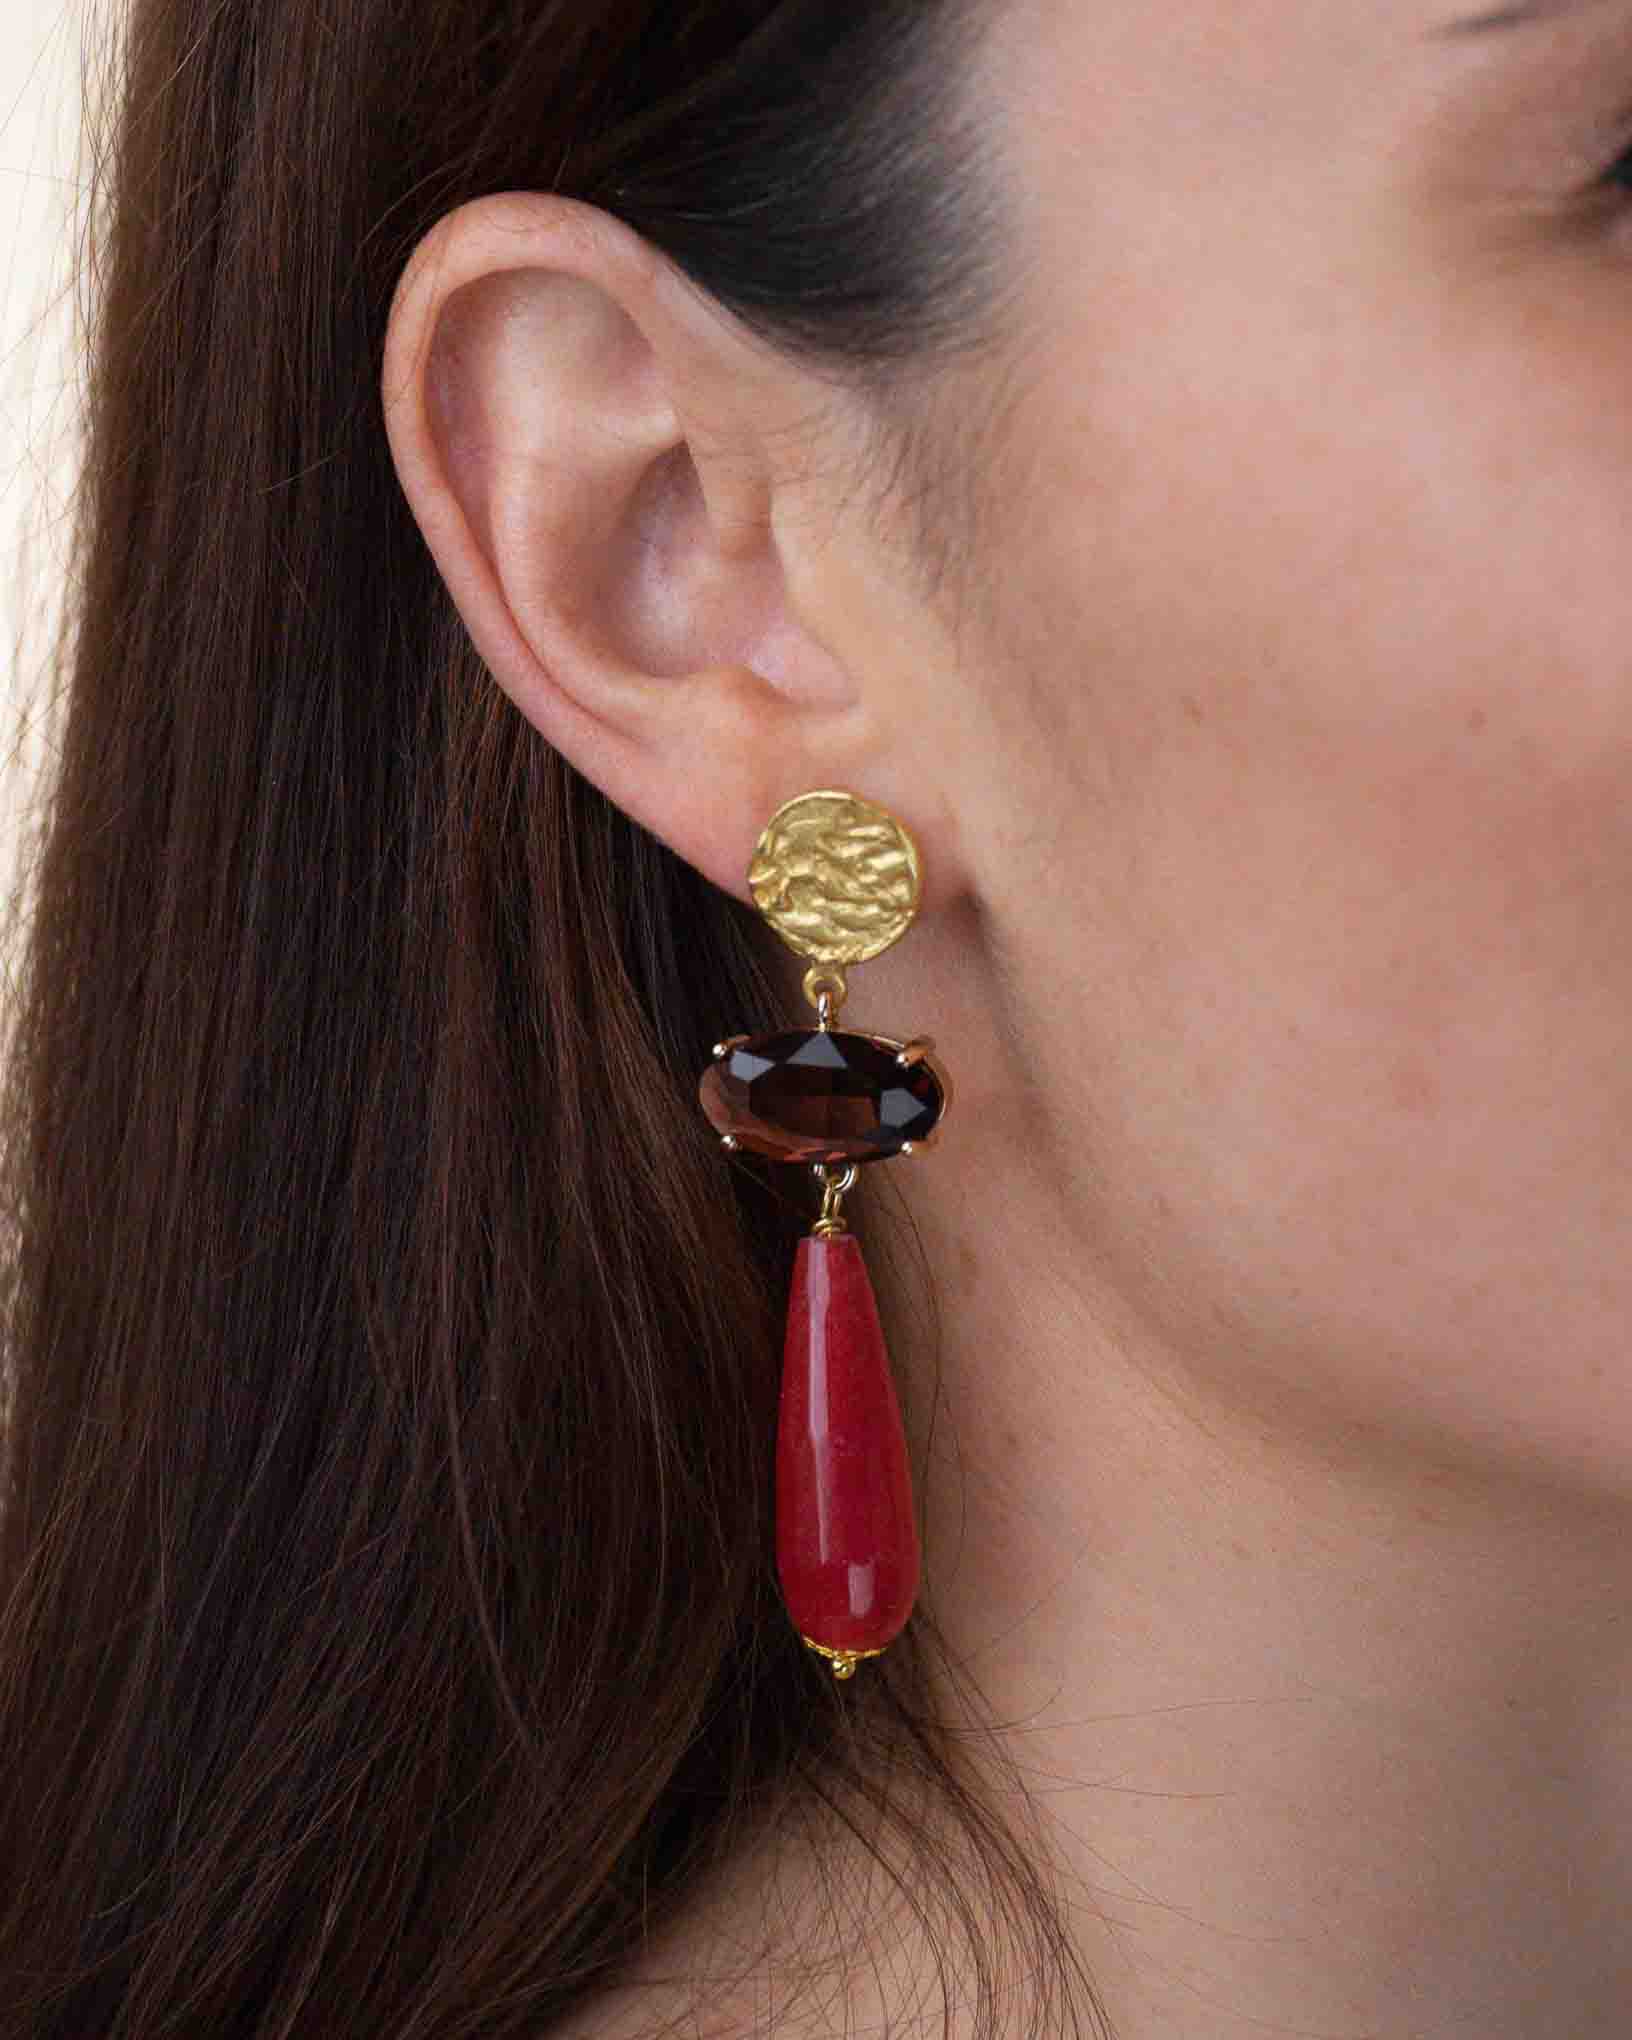 Ohrring Procida aus der Kollektion I Classici von Donna Rachele Jewelry